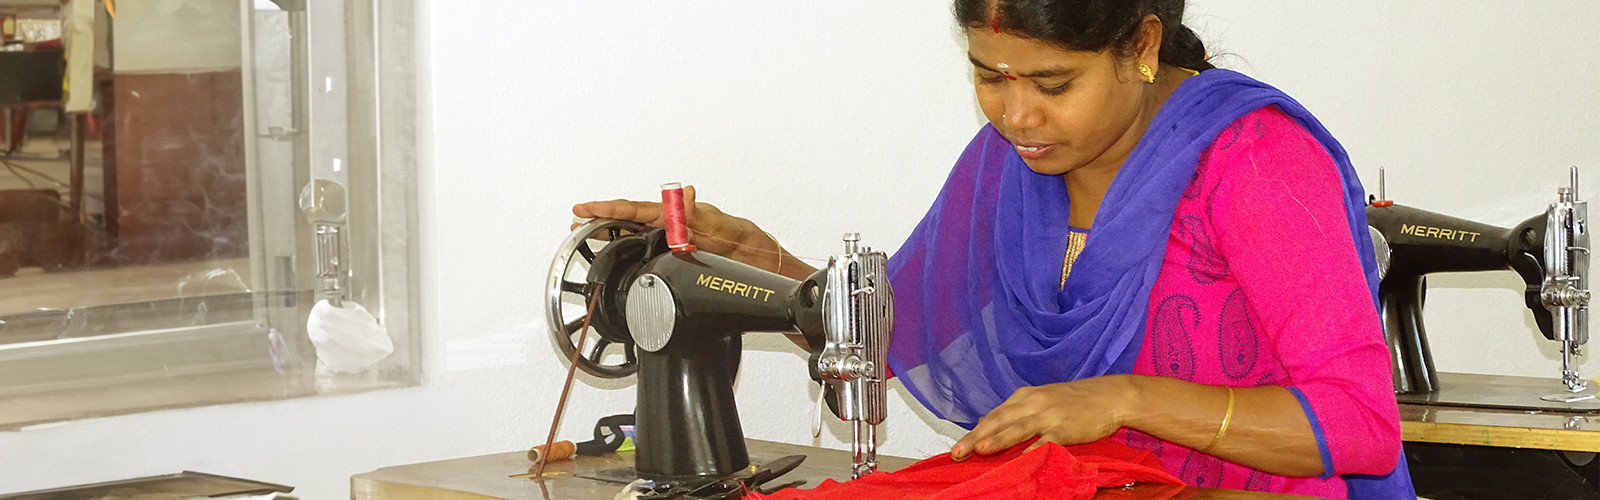 Woman stitching